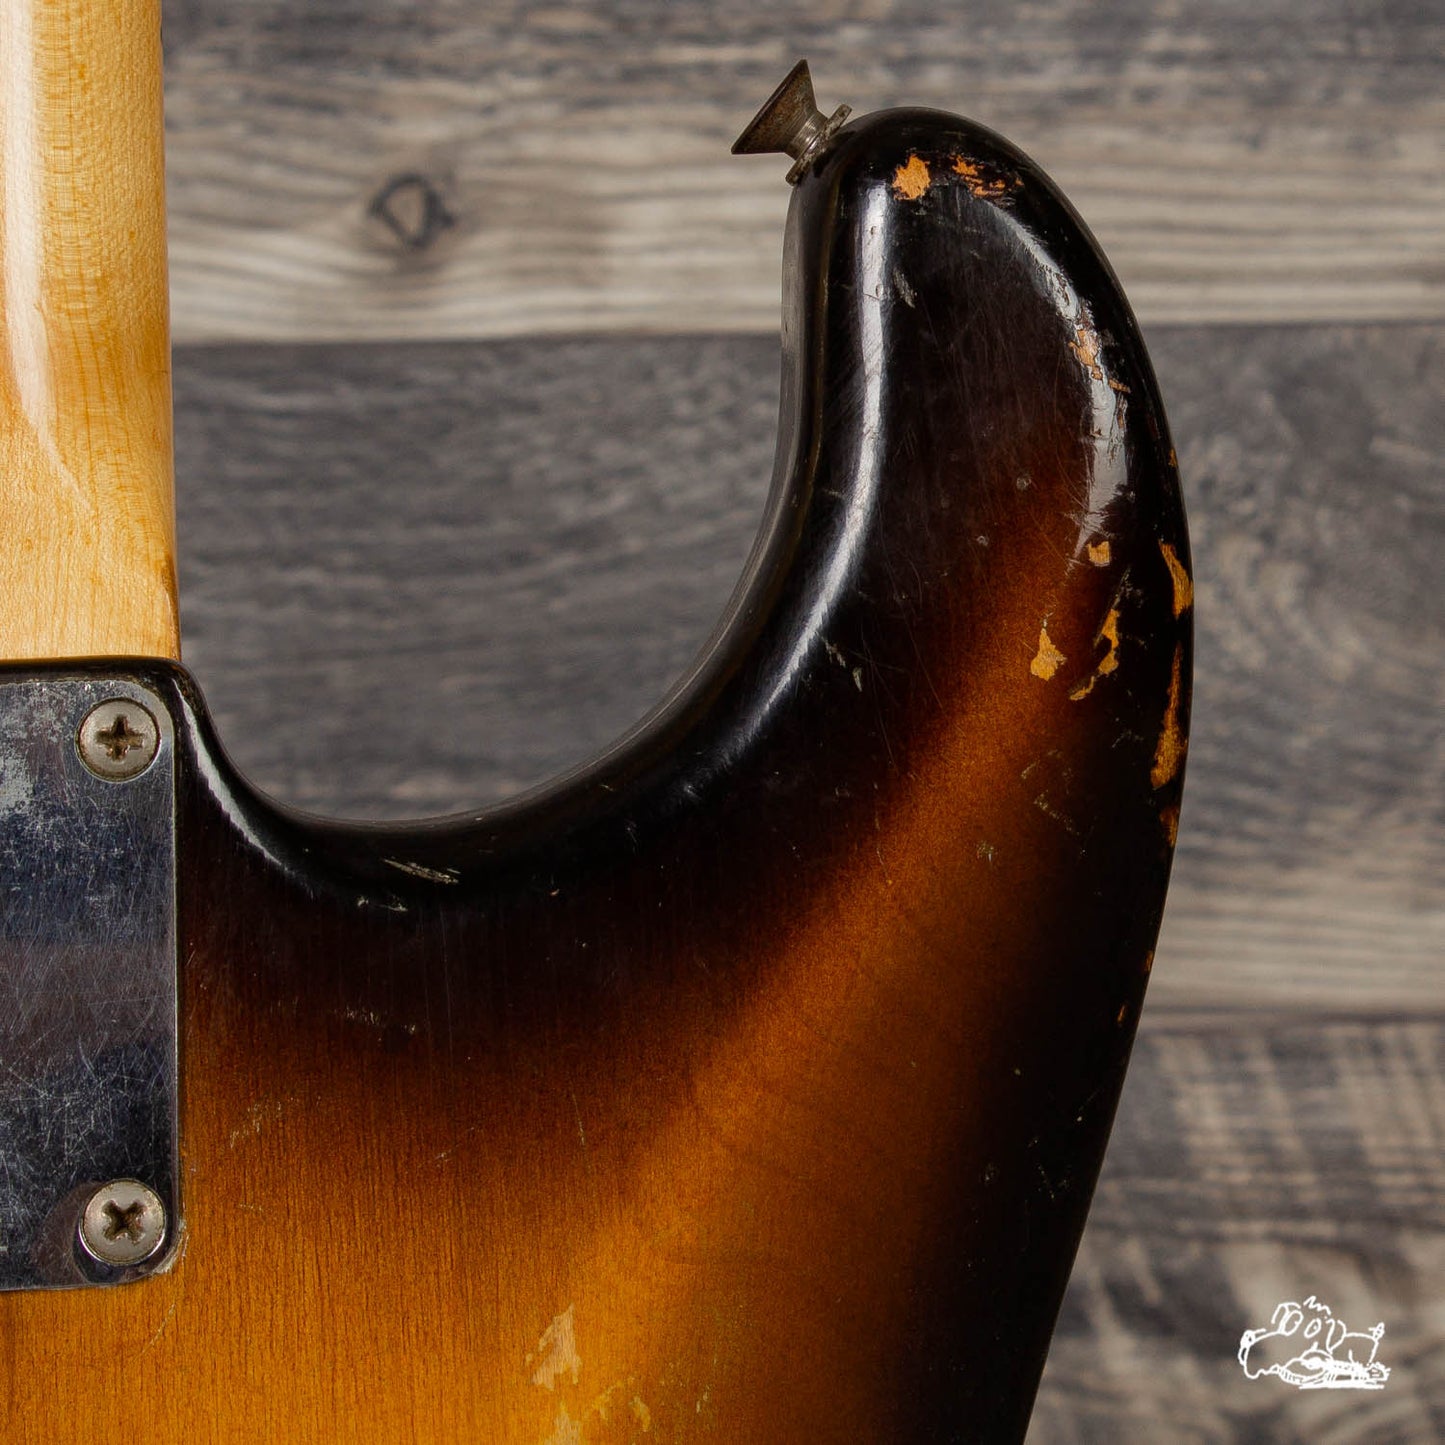 1957 Fender Stratocaster